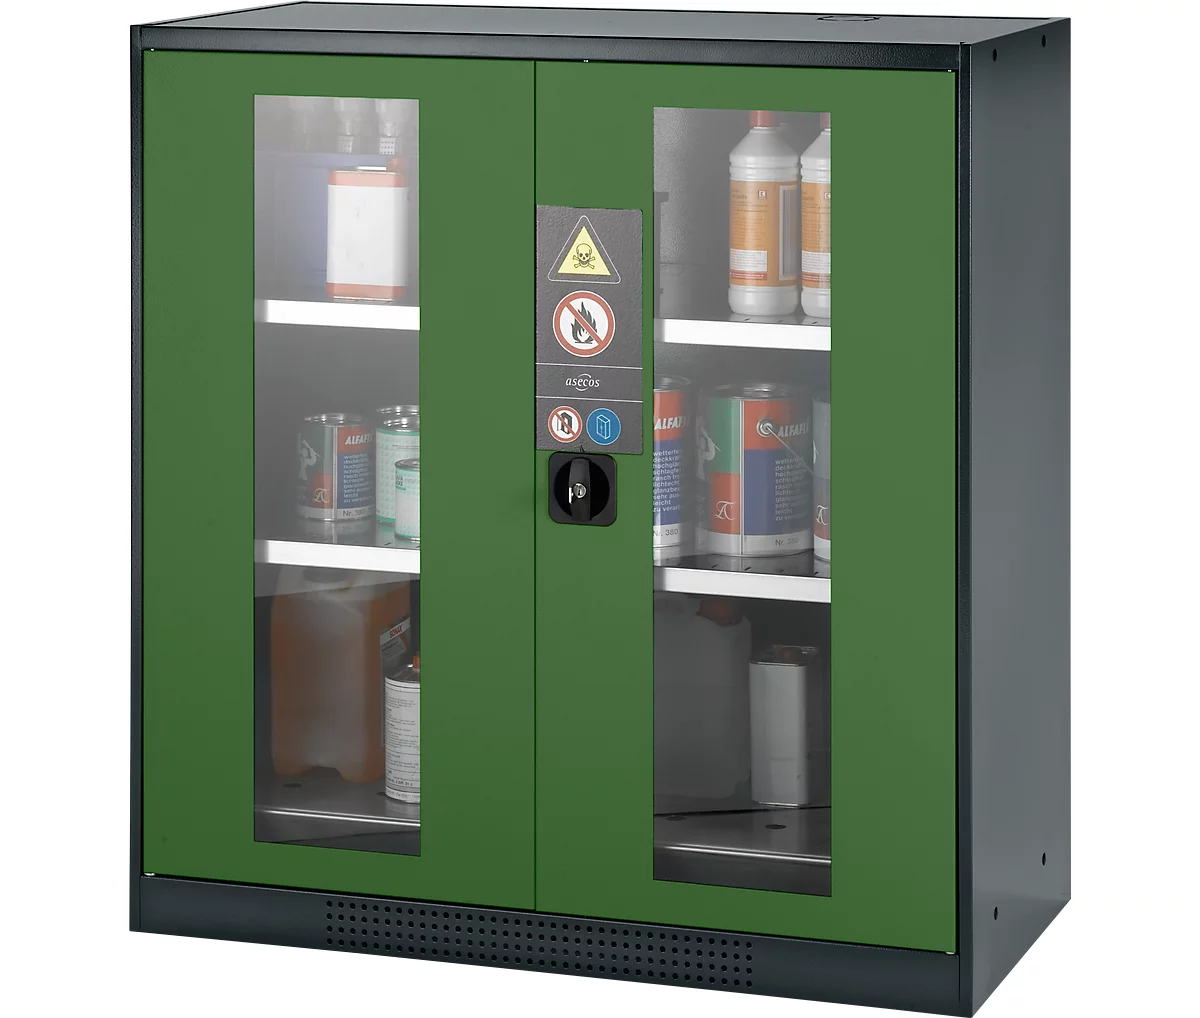 Armario para productos químicos Asecos CS-CLASSIC-G, puerta con bisagras con recorte de cristal, 2 estantes, 1055x520x1105 mm, verde reseda